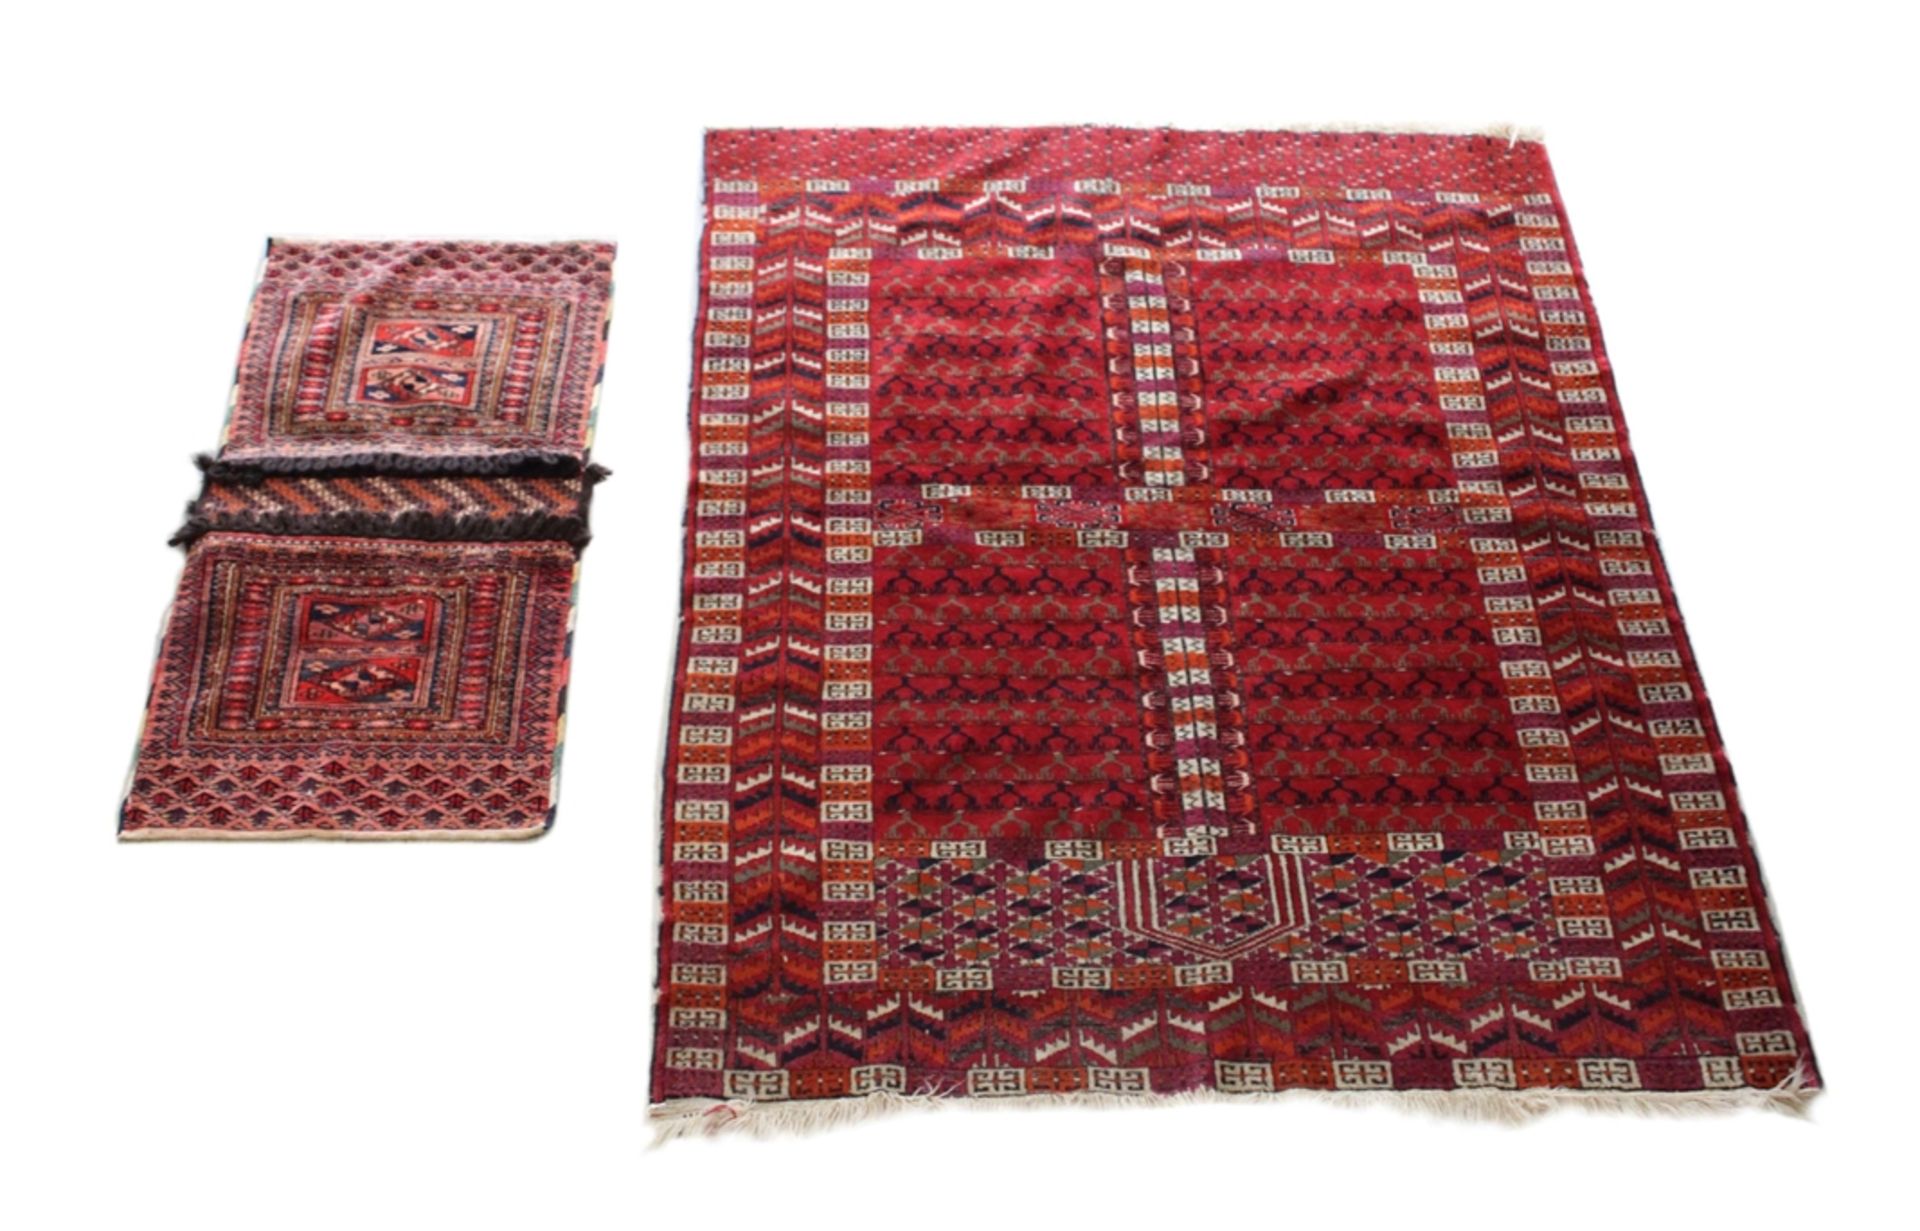 Teppich und Satteltasche, Satteltasche: Wolle a. Wolle, ca. 80 Jahre alt. Maße: 90 x 43 cm. Altersb